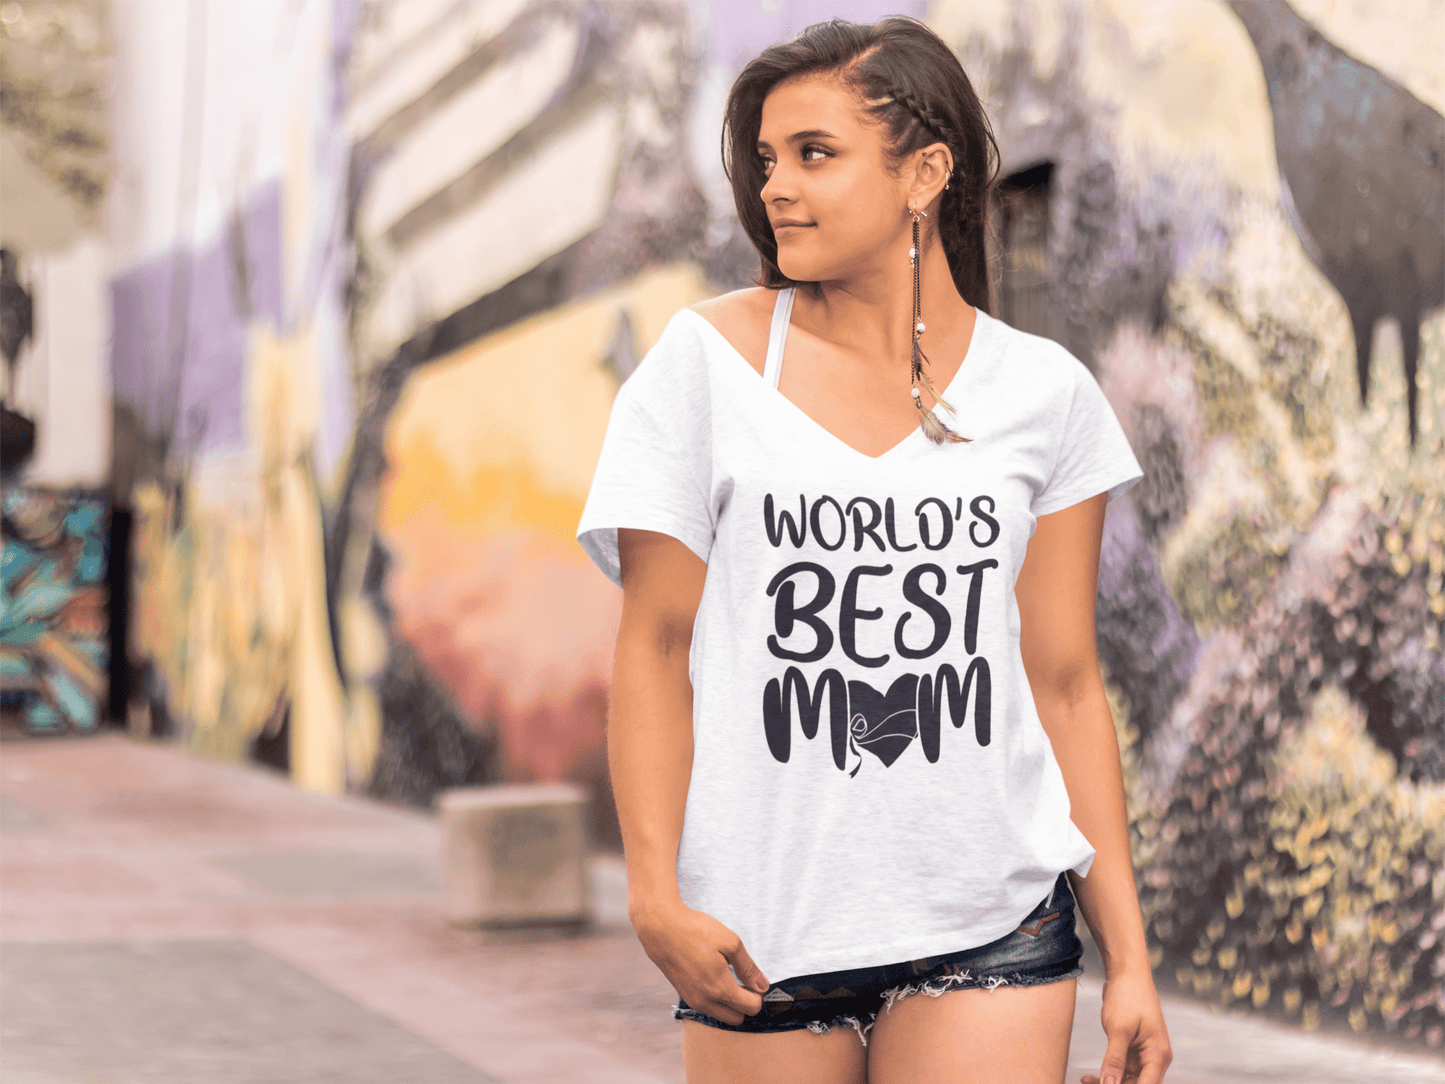 ULTRABASIC Women's T-Shirt World's Best Mom - Heart Mother Tee Shirt Tops